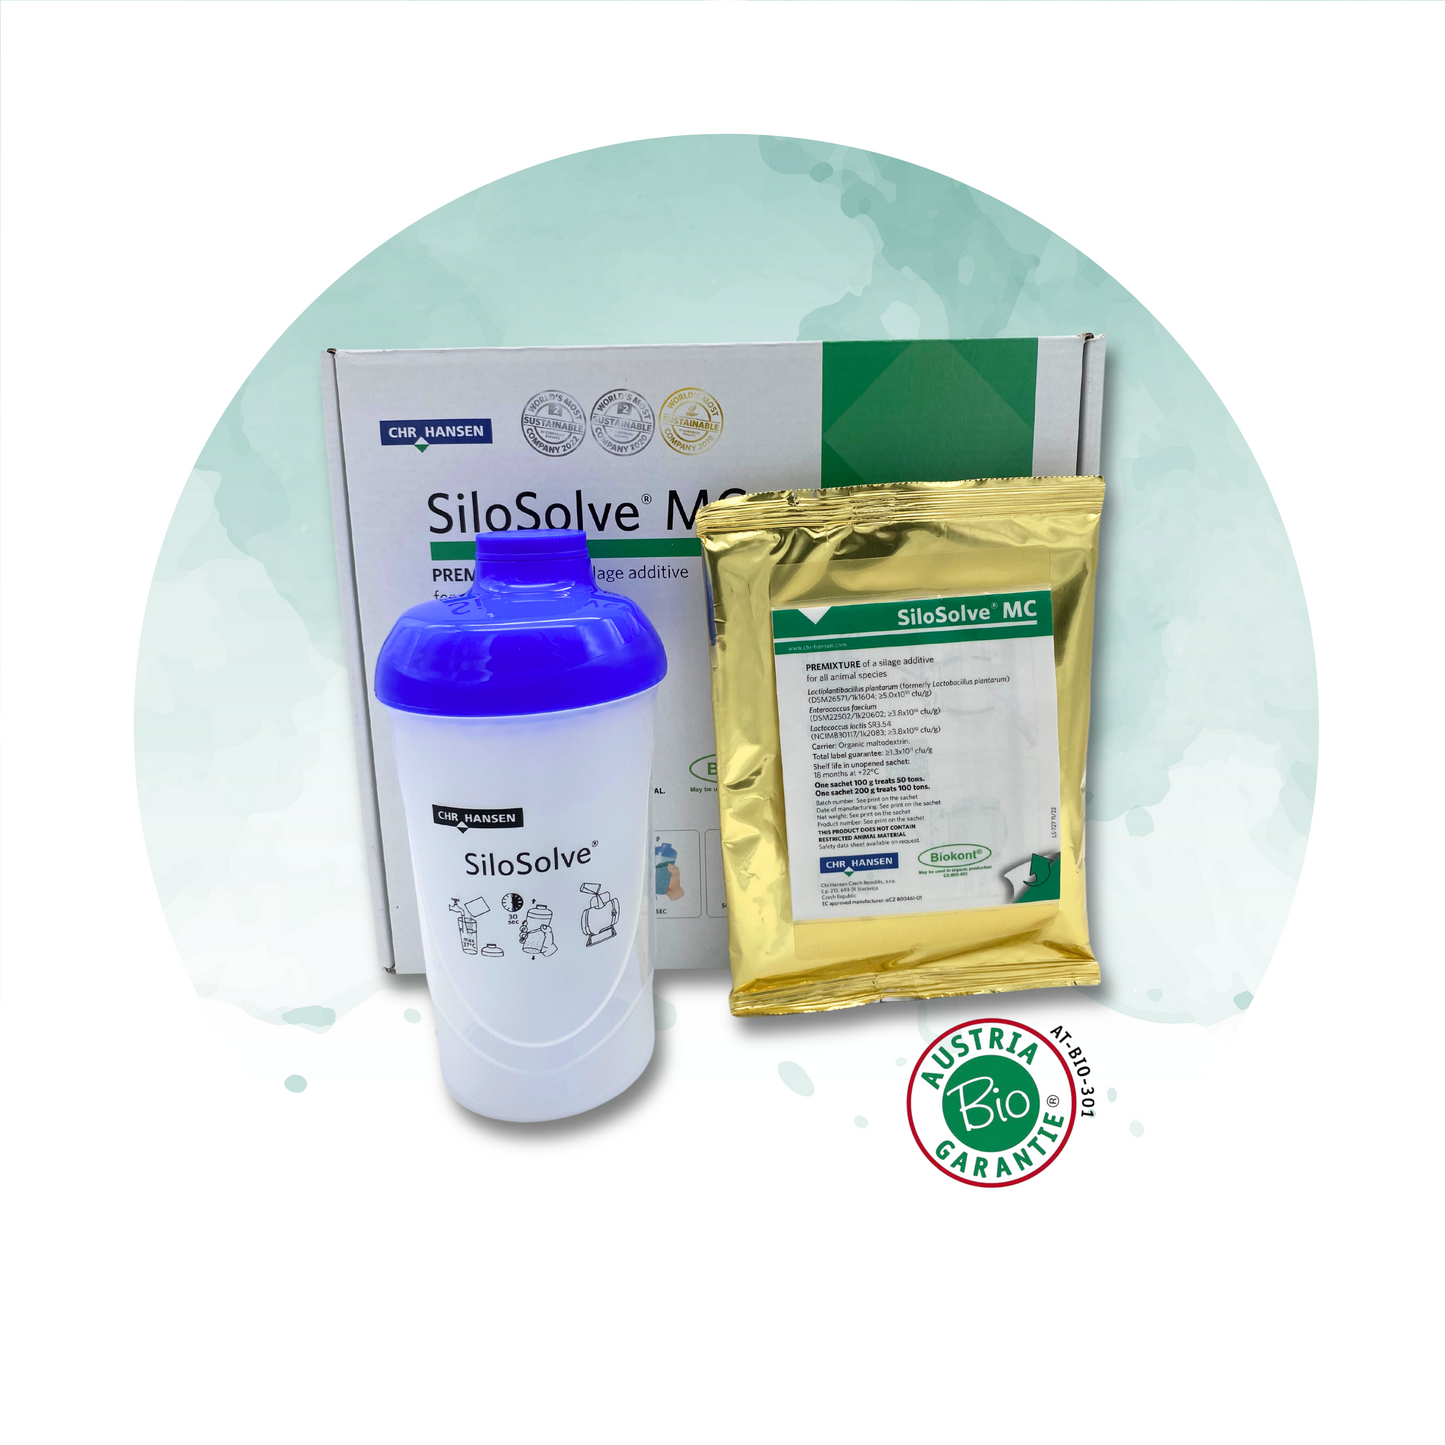 SILOSOLVE® MC Siliermittel für optimierte Fermentation und Schutz vor Gärschädlingen. Bild zeigt Verpackung des Siliermittels, geeignet für feuchte Erntebedingungen und verschiedene Silagearten.